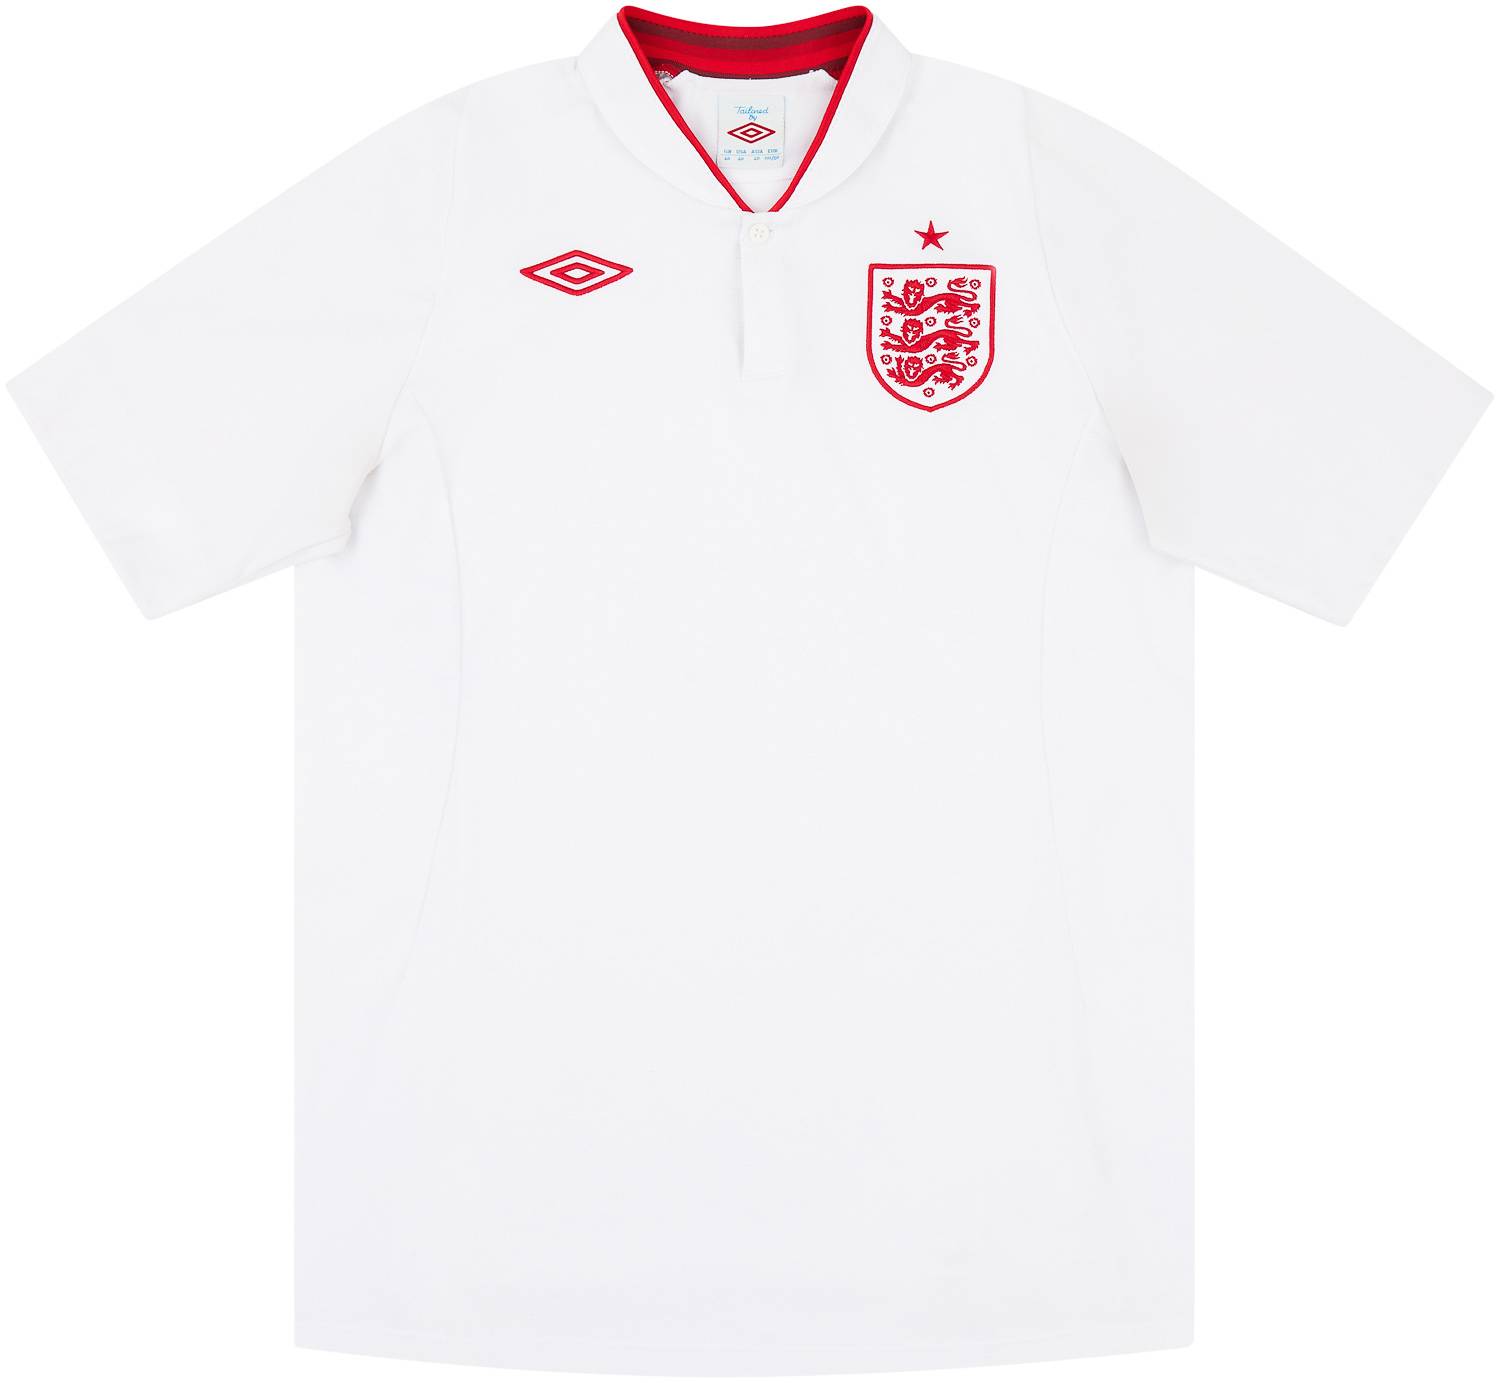 2012-13 England Home Shirt - 9/10 - M